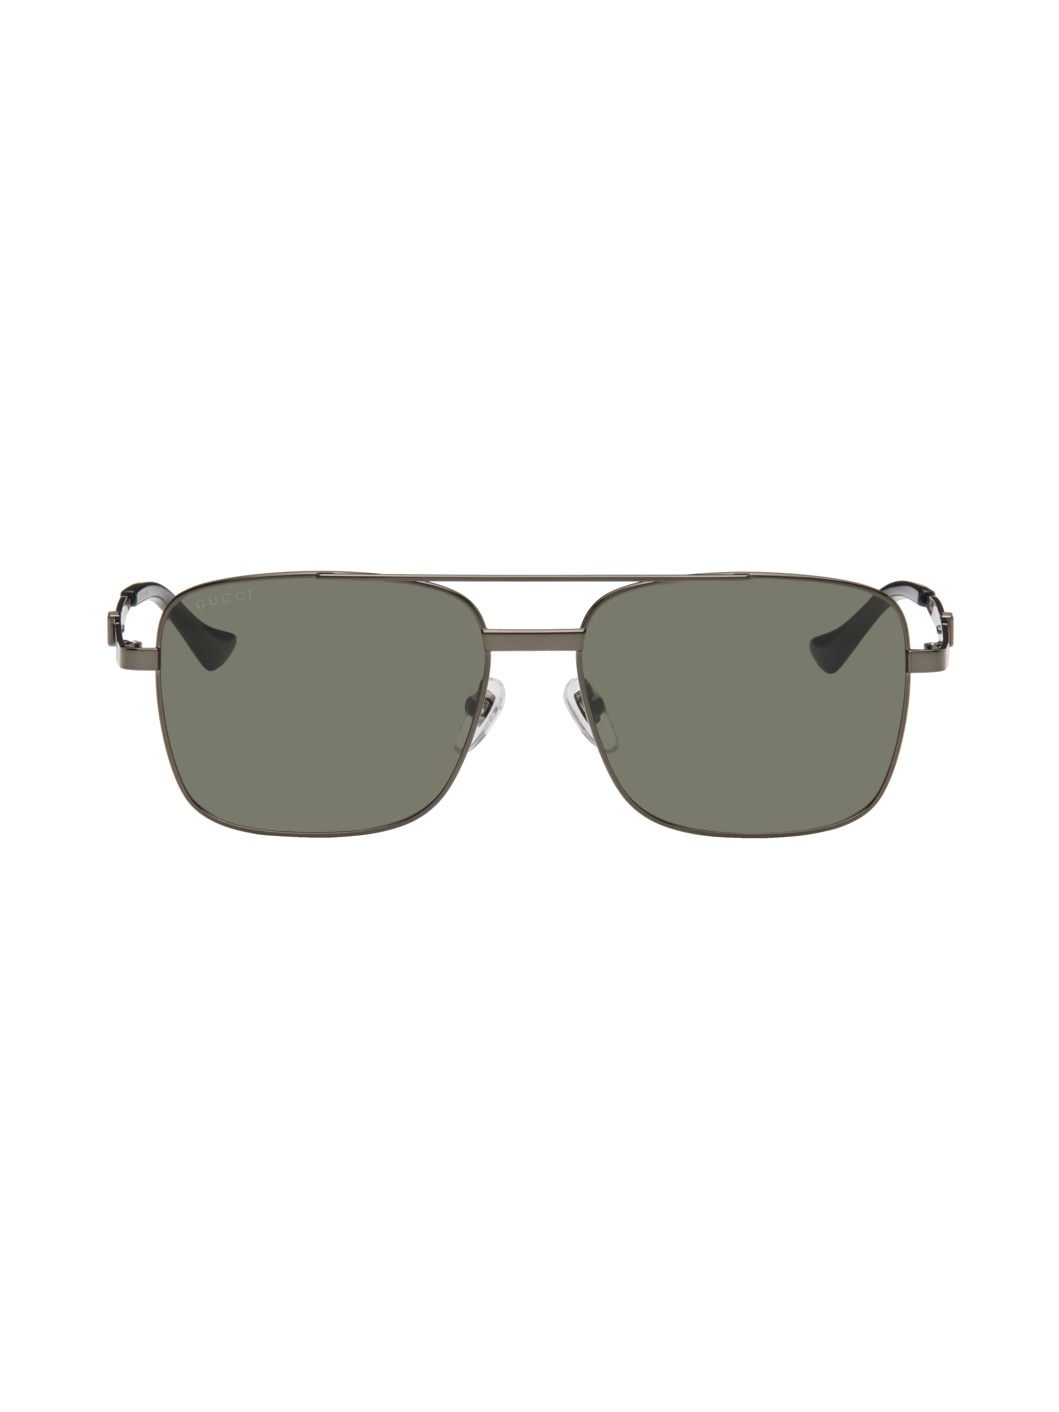 Gunmetal Square Sunglasses - 1